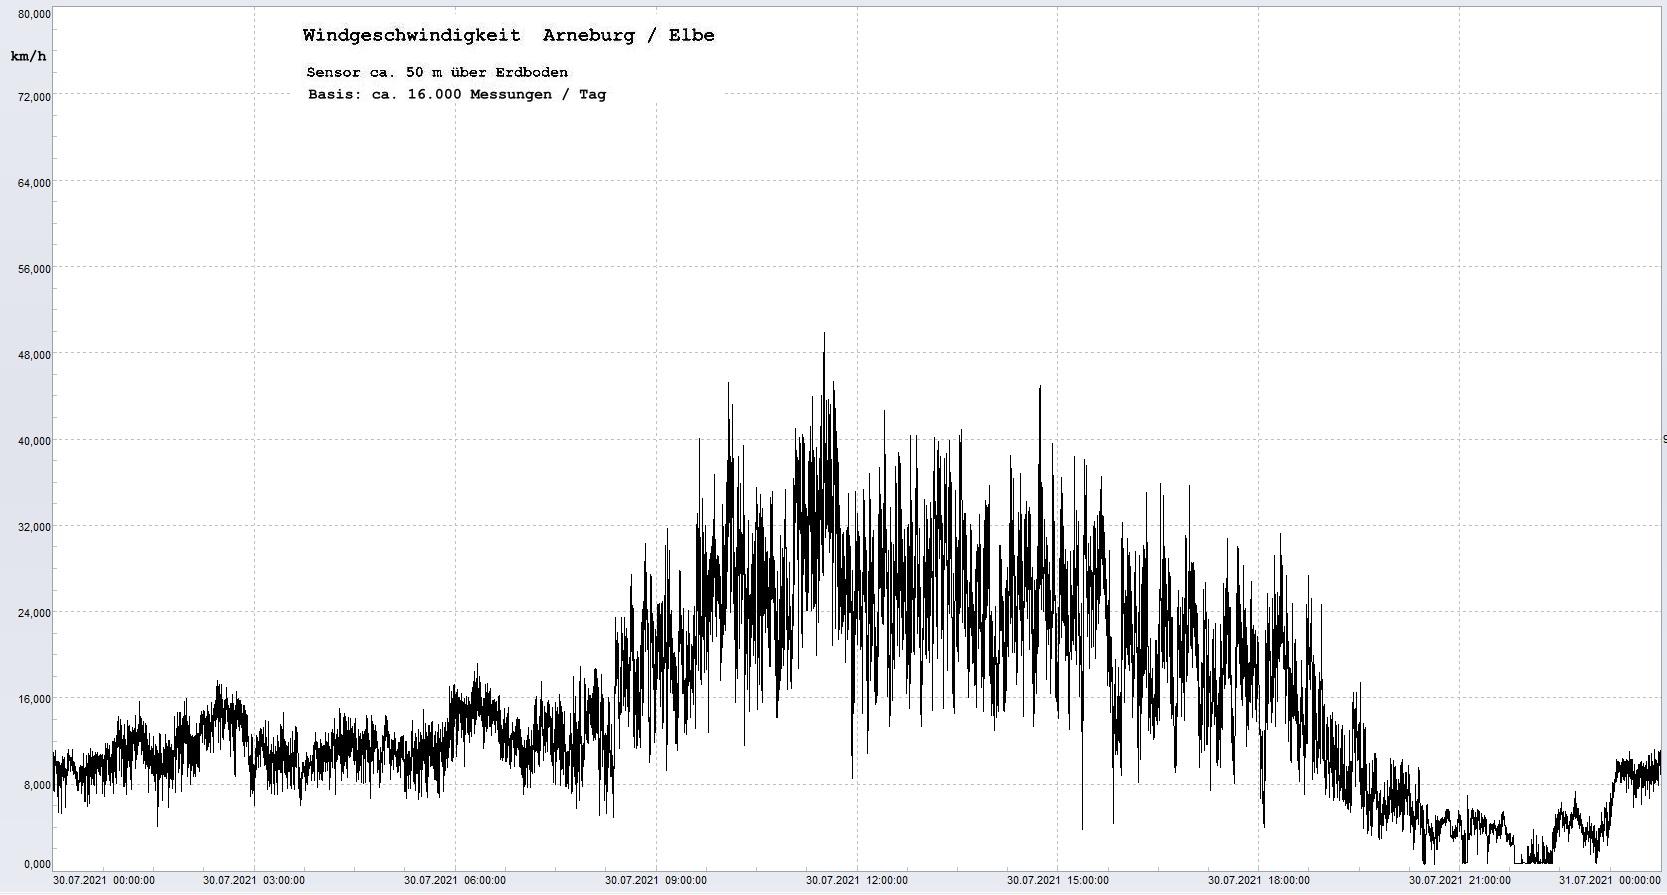 Arneburg Tages-Diagramm Winddaten, 30.07.2021
  Diagramm, Sensor auf Gebäude, ca. 50 m über Erdboden, Basis: 5s-Aufzeichnung